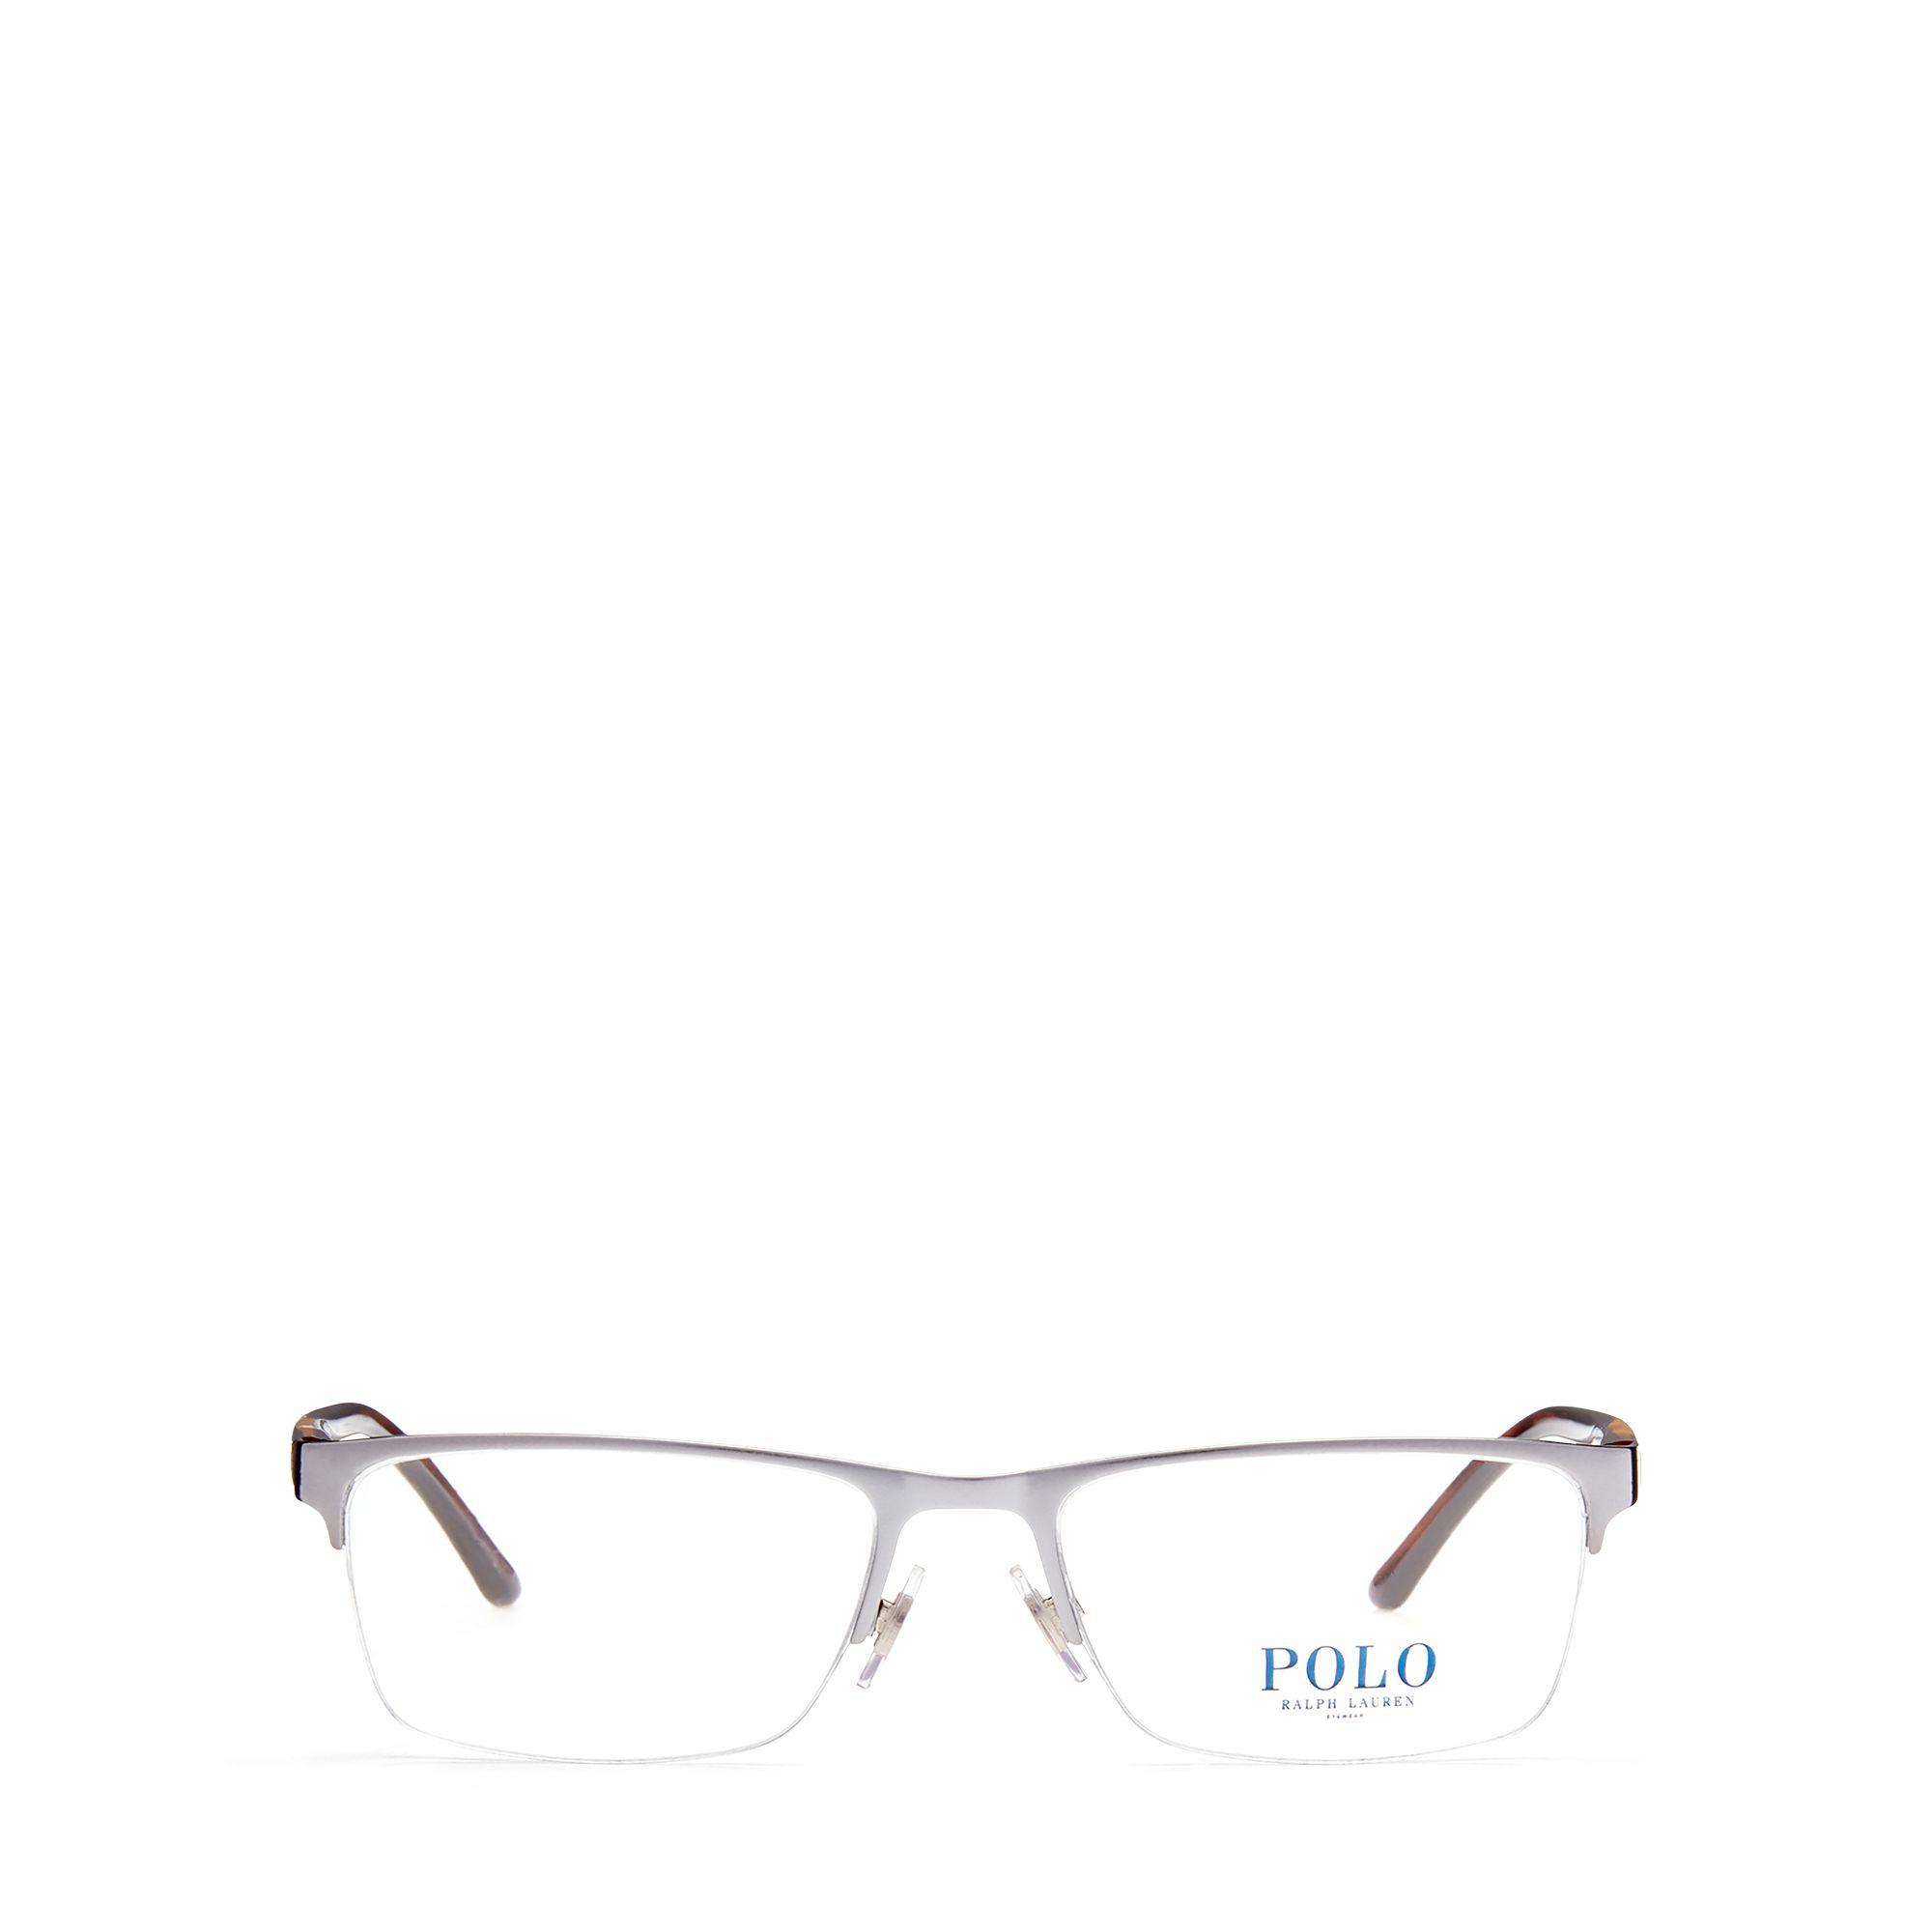 Polo Ralph Lauren Rubber Rimless Rectangular Eyeglasses for Men - Lyst